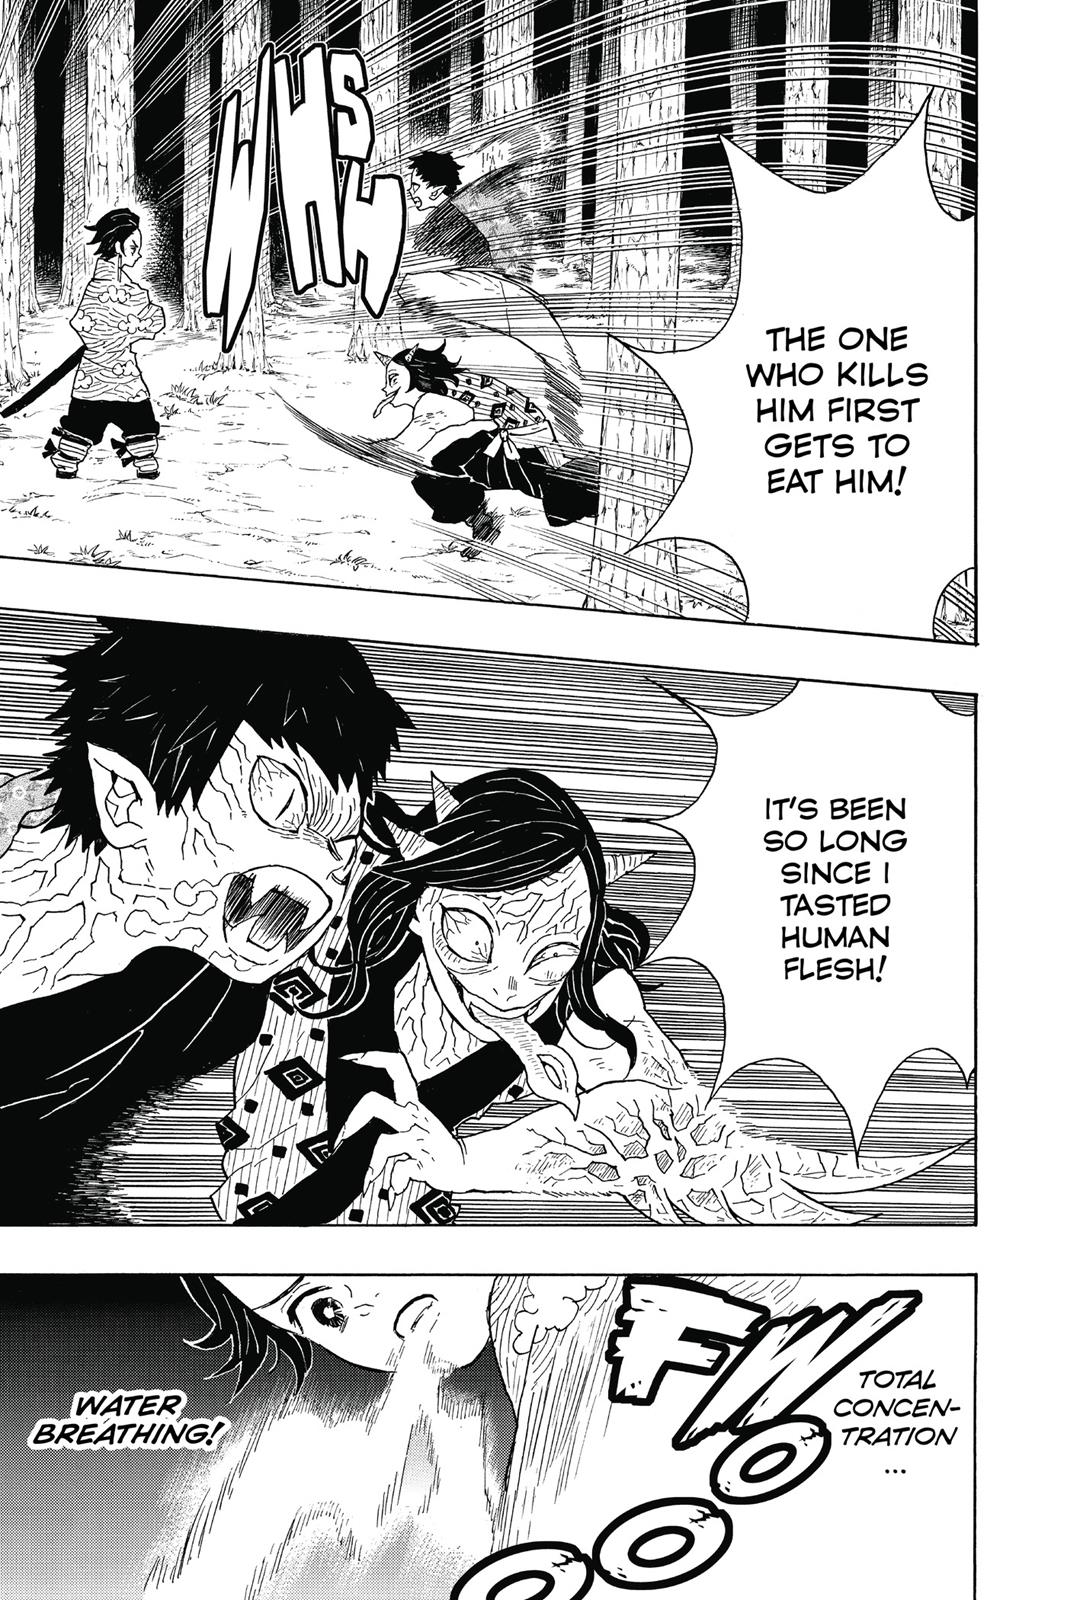 Demon Slayer Manga Manga Chapter - 6 - image 3